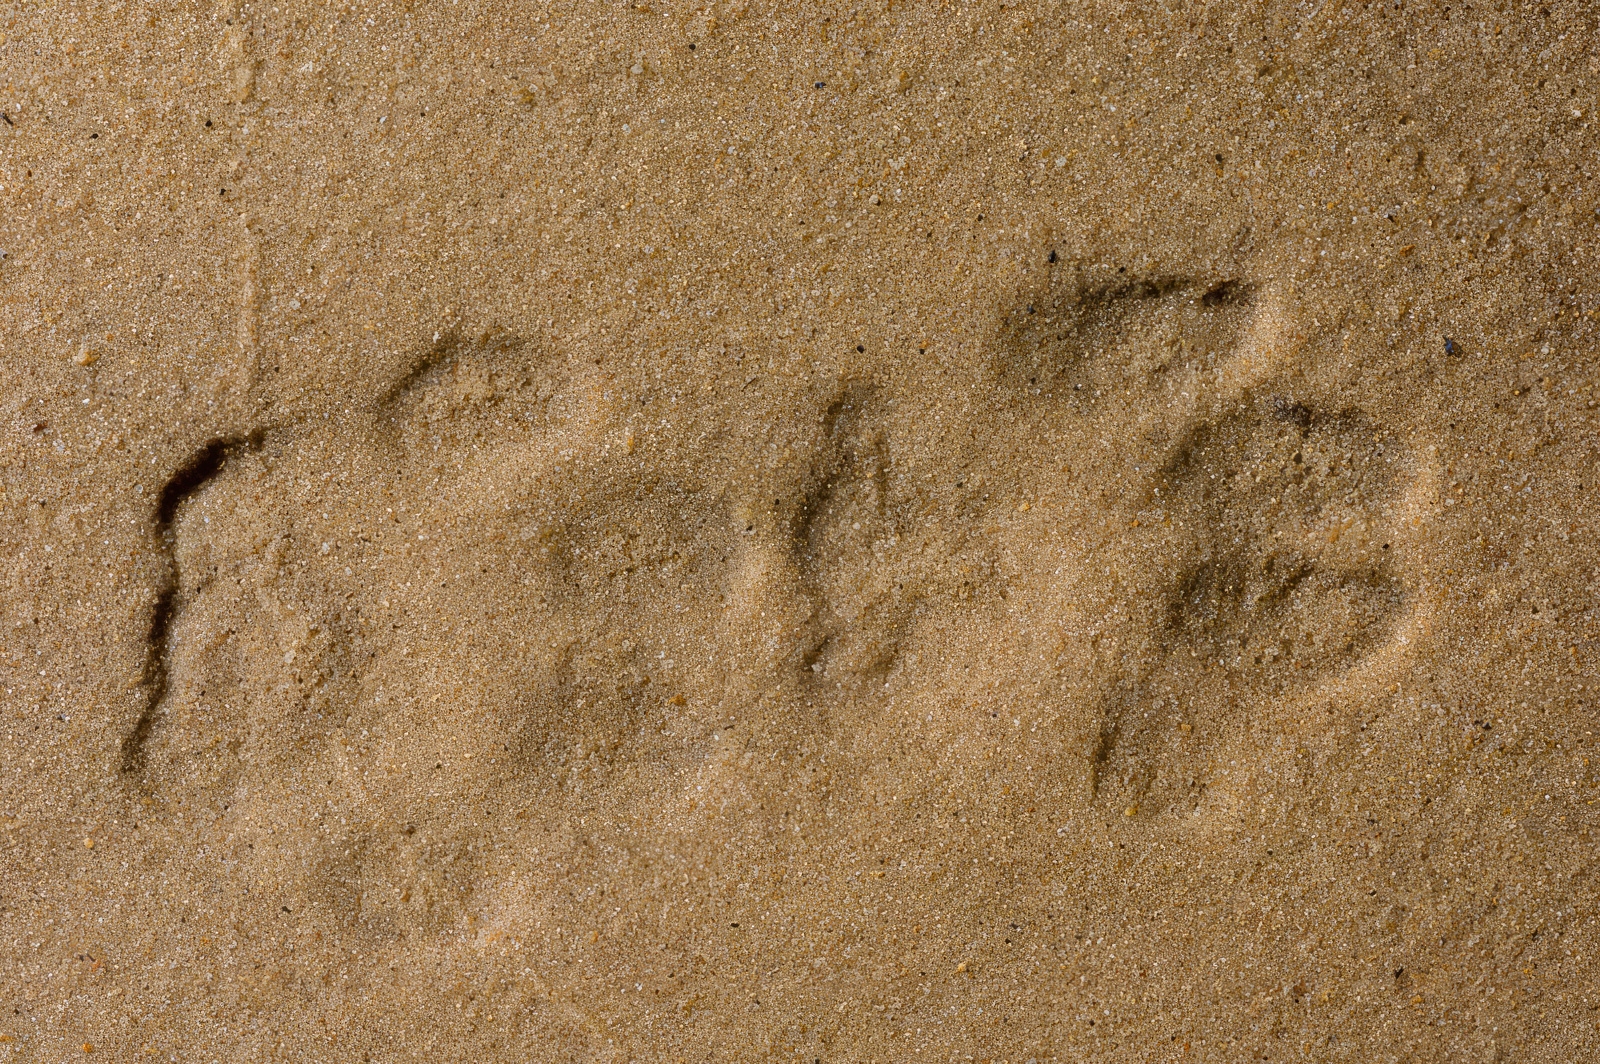 Ampliar imagen: dos huellas de lince sobre la arena